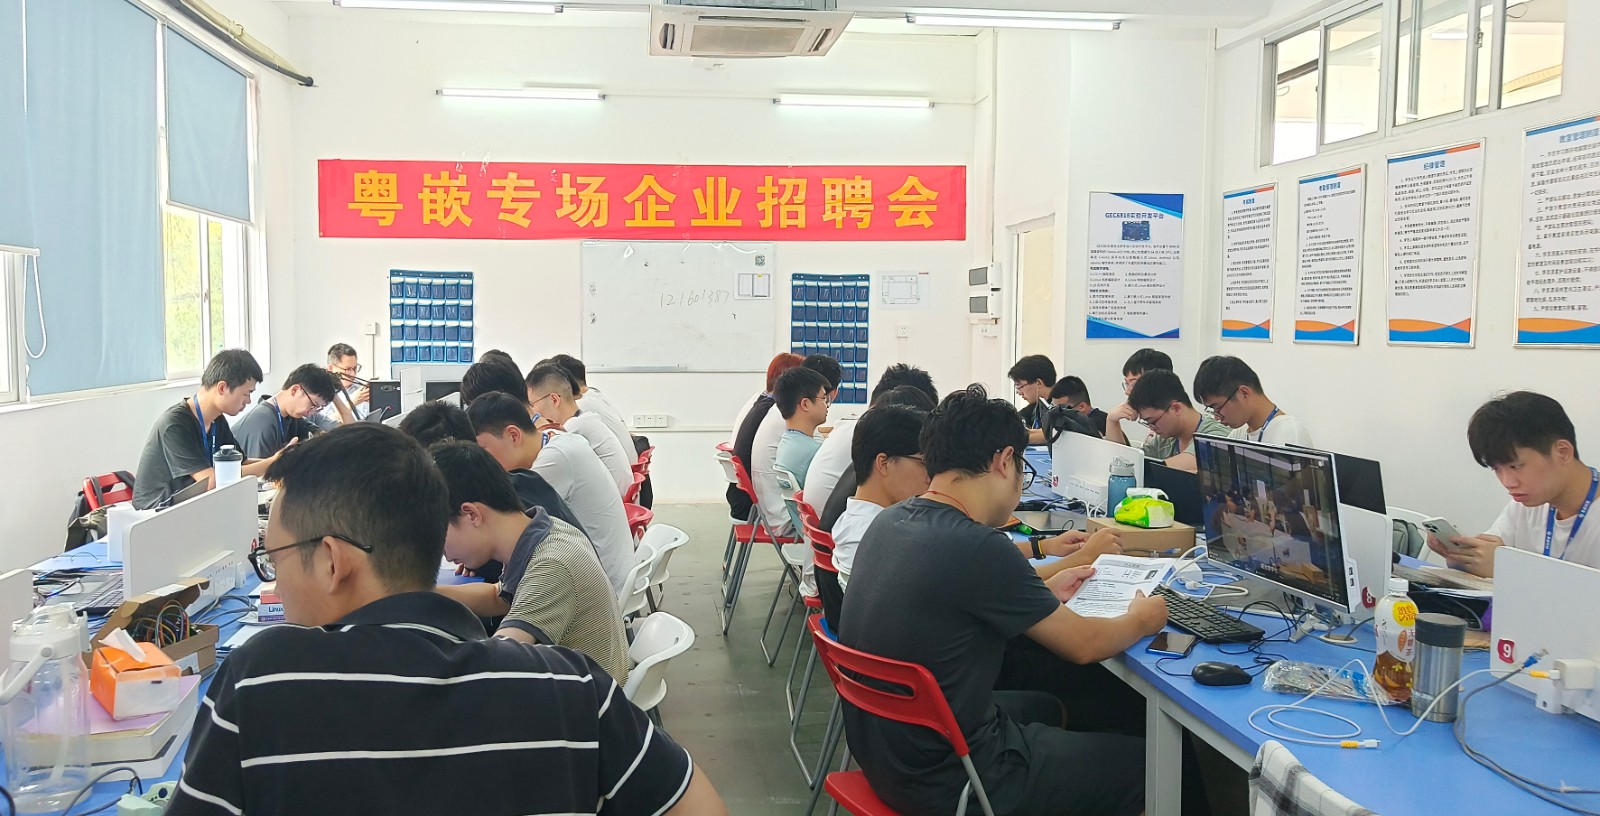 广州蓝海机器人系统有限公司专场招聘会